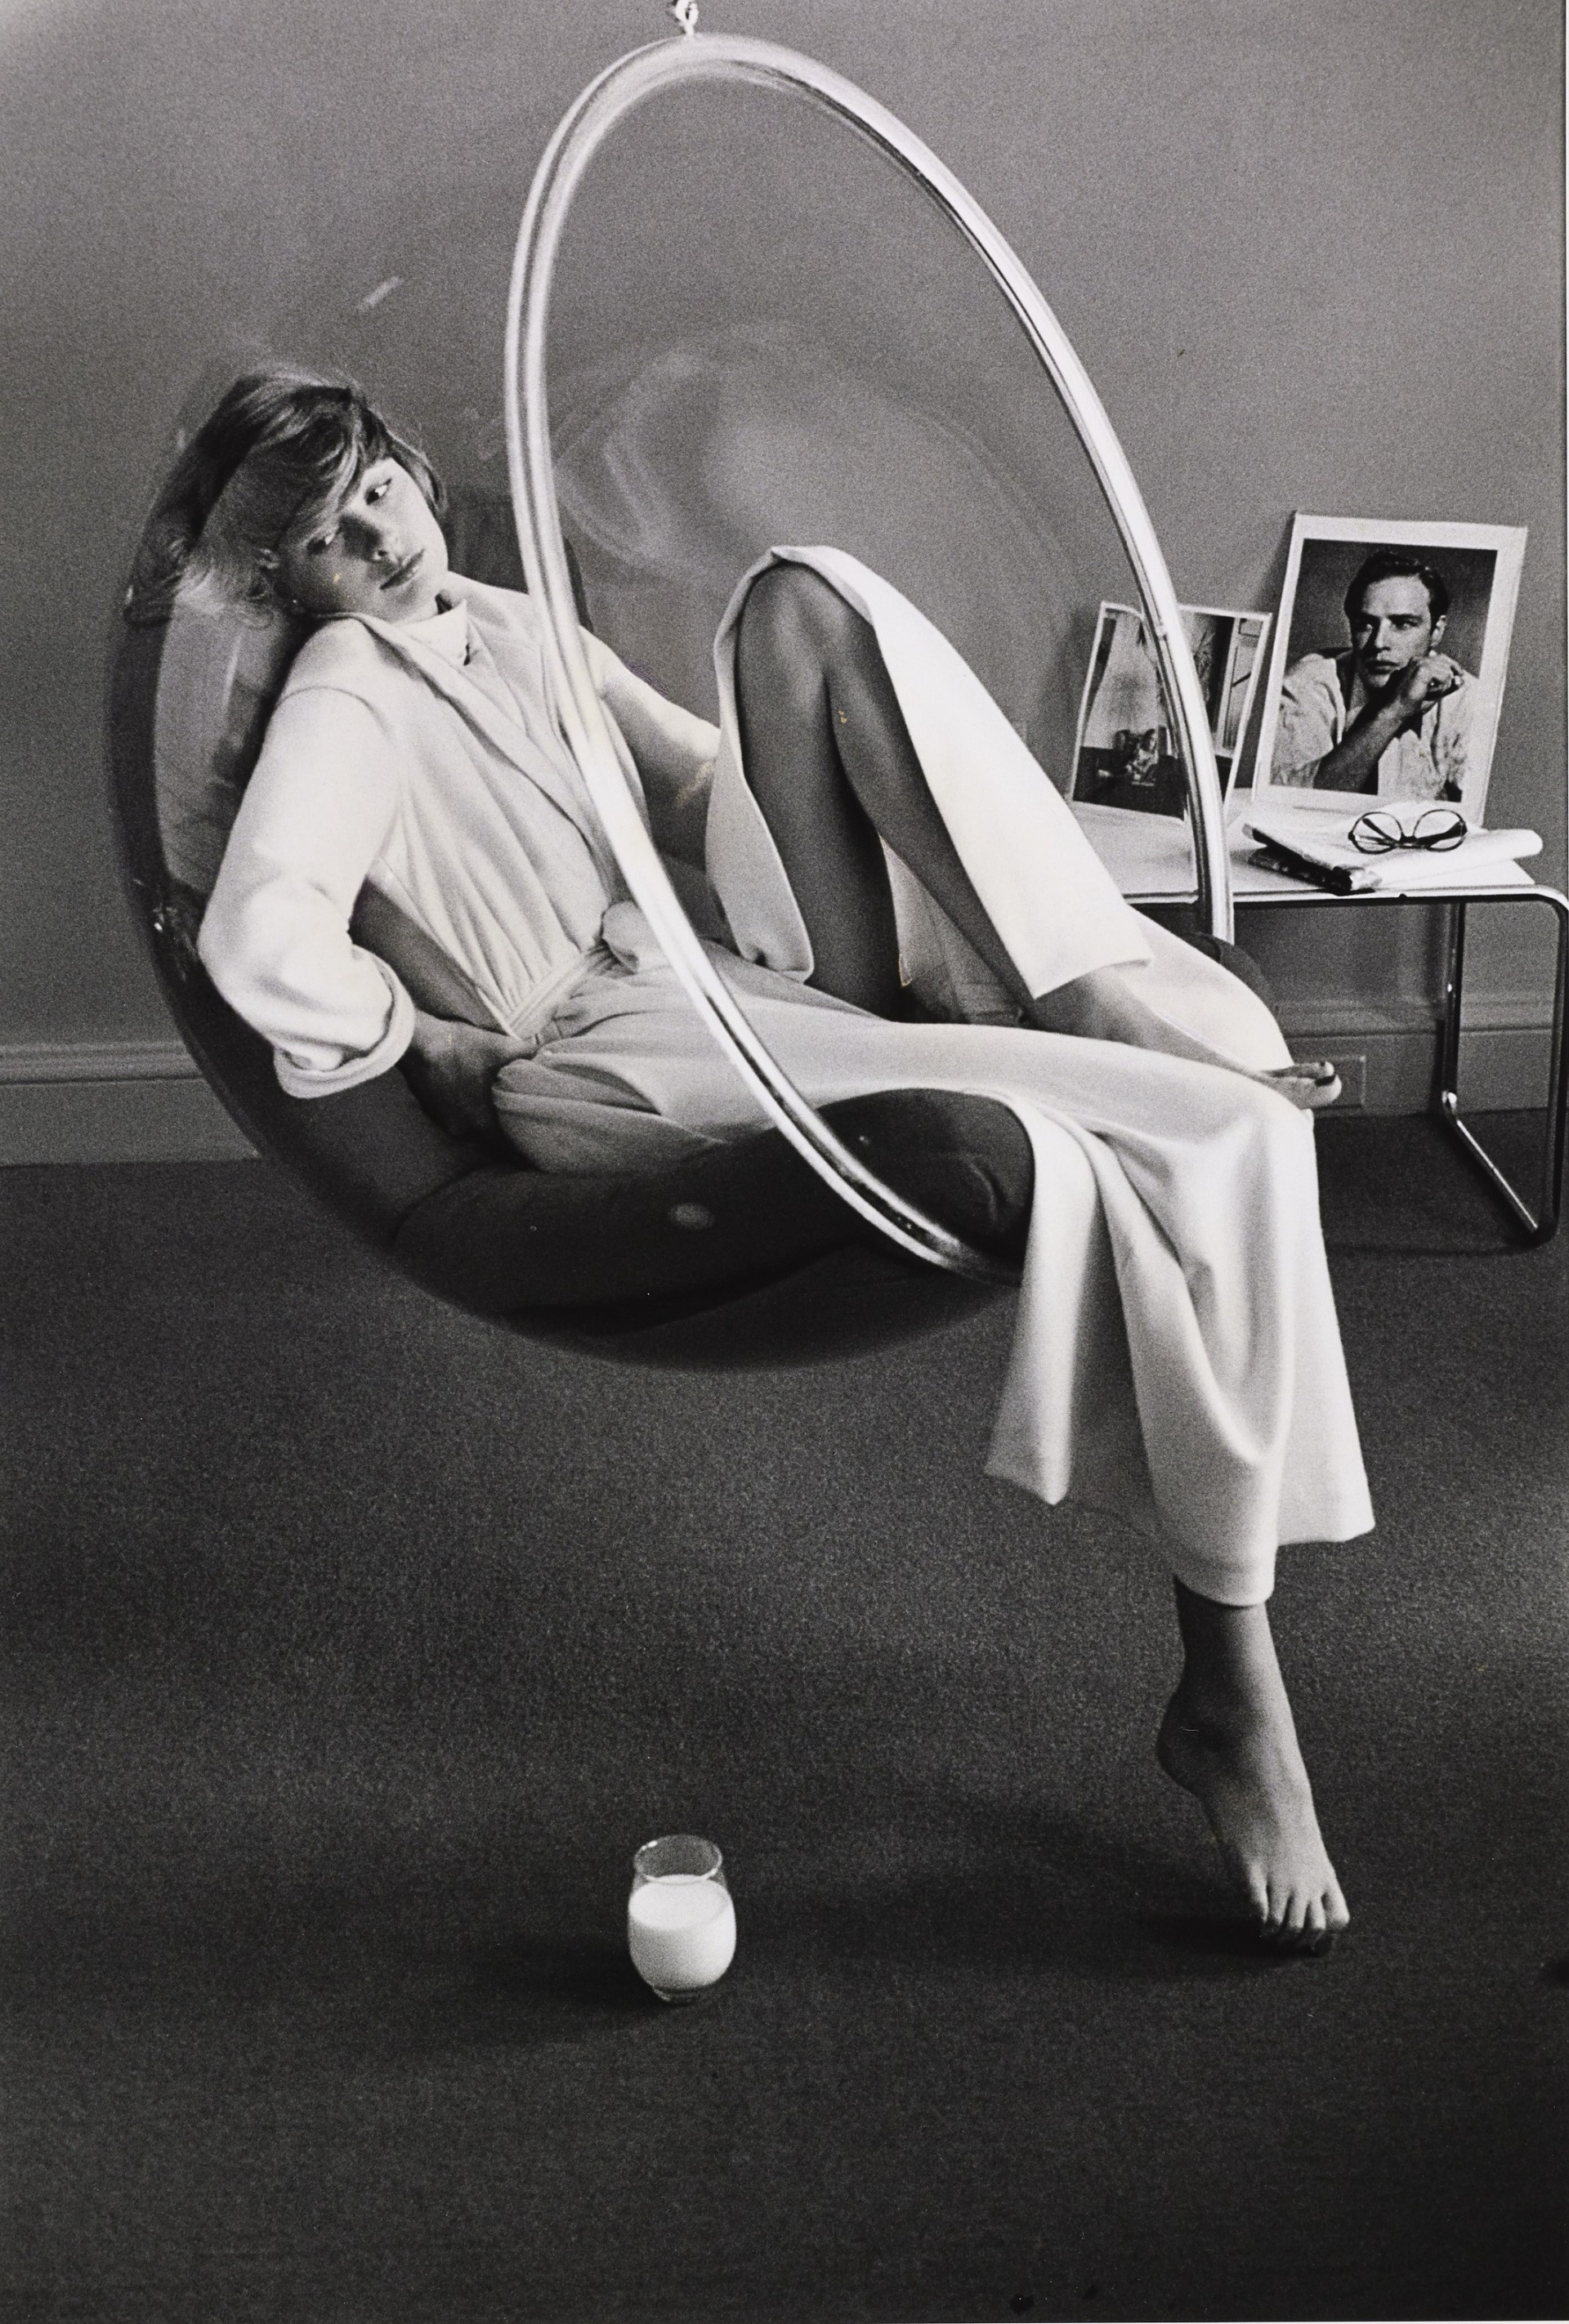 Kourken Pakchanian, Modella seduta in una Bubble Chair, 1973, Vogue © Condé Nast